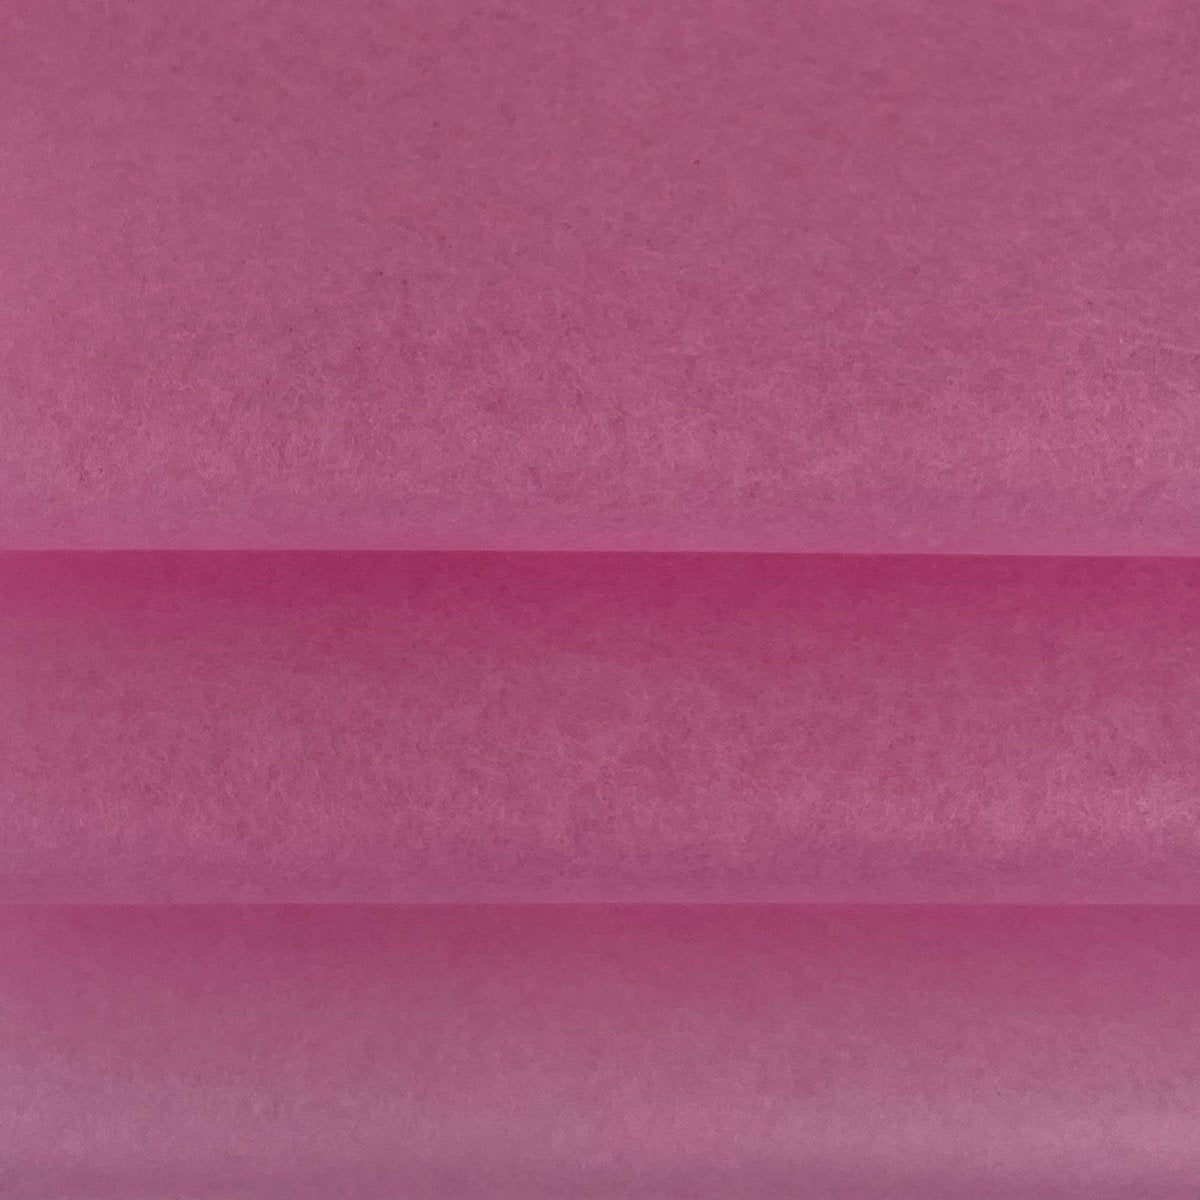 Seidenpapier rosa